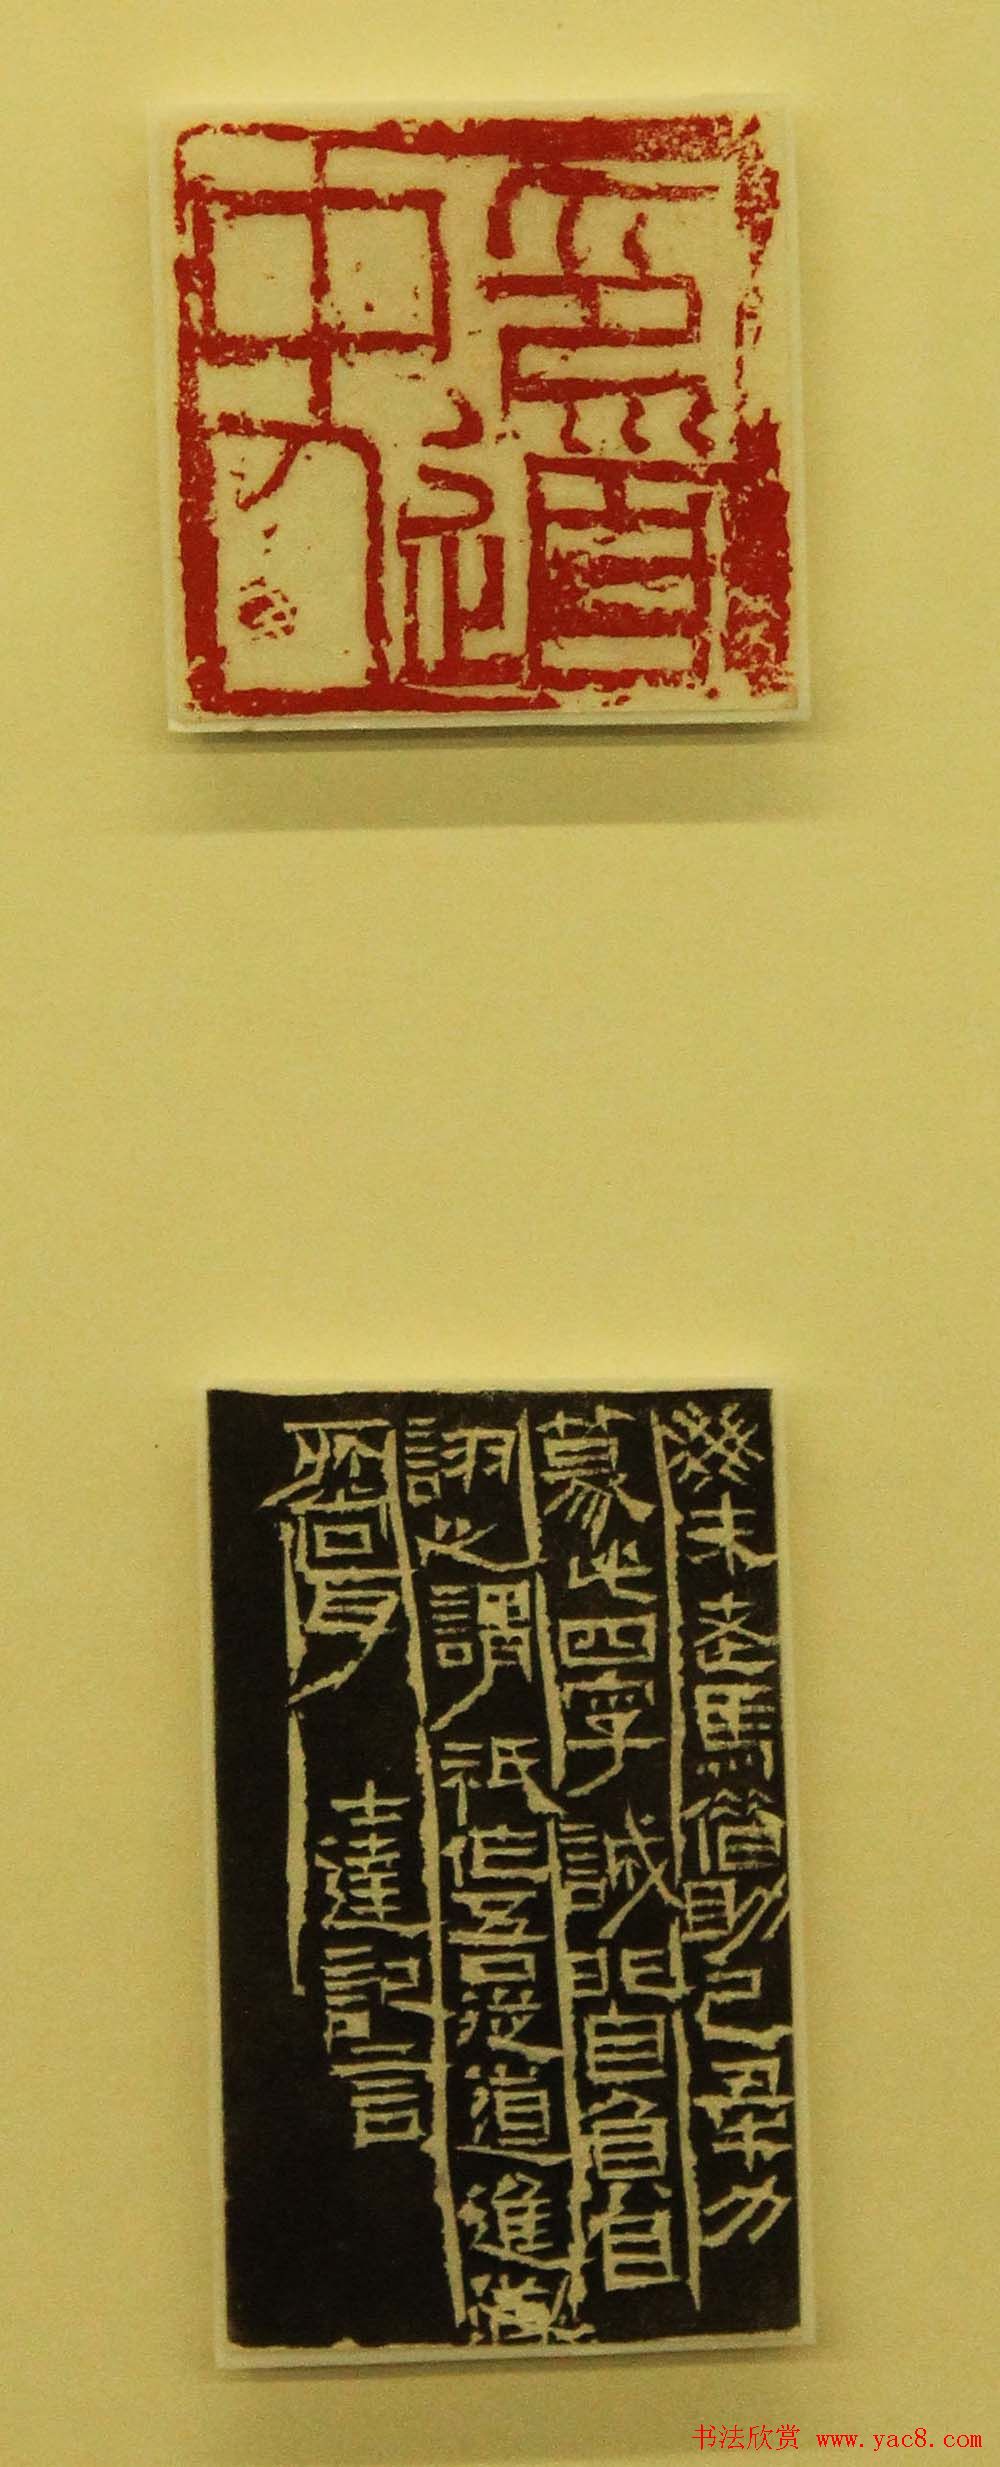 江苏美术馆马士达书法篆刻展作品欣赏